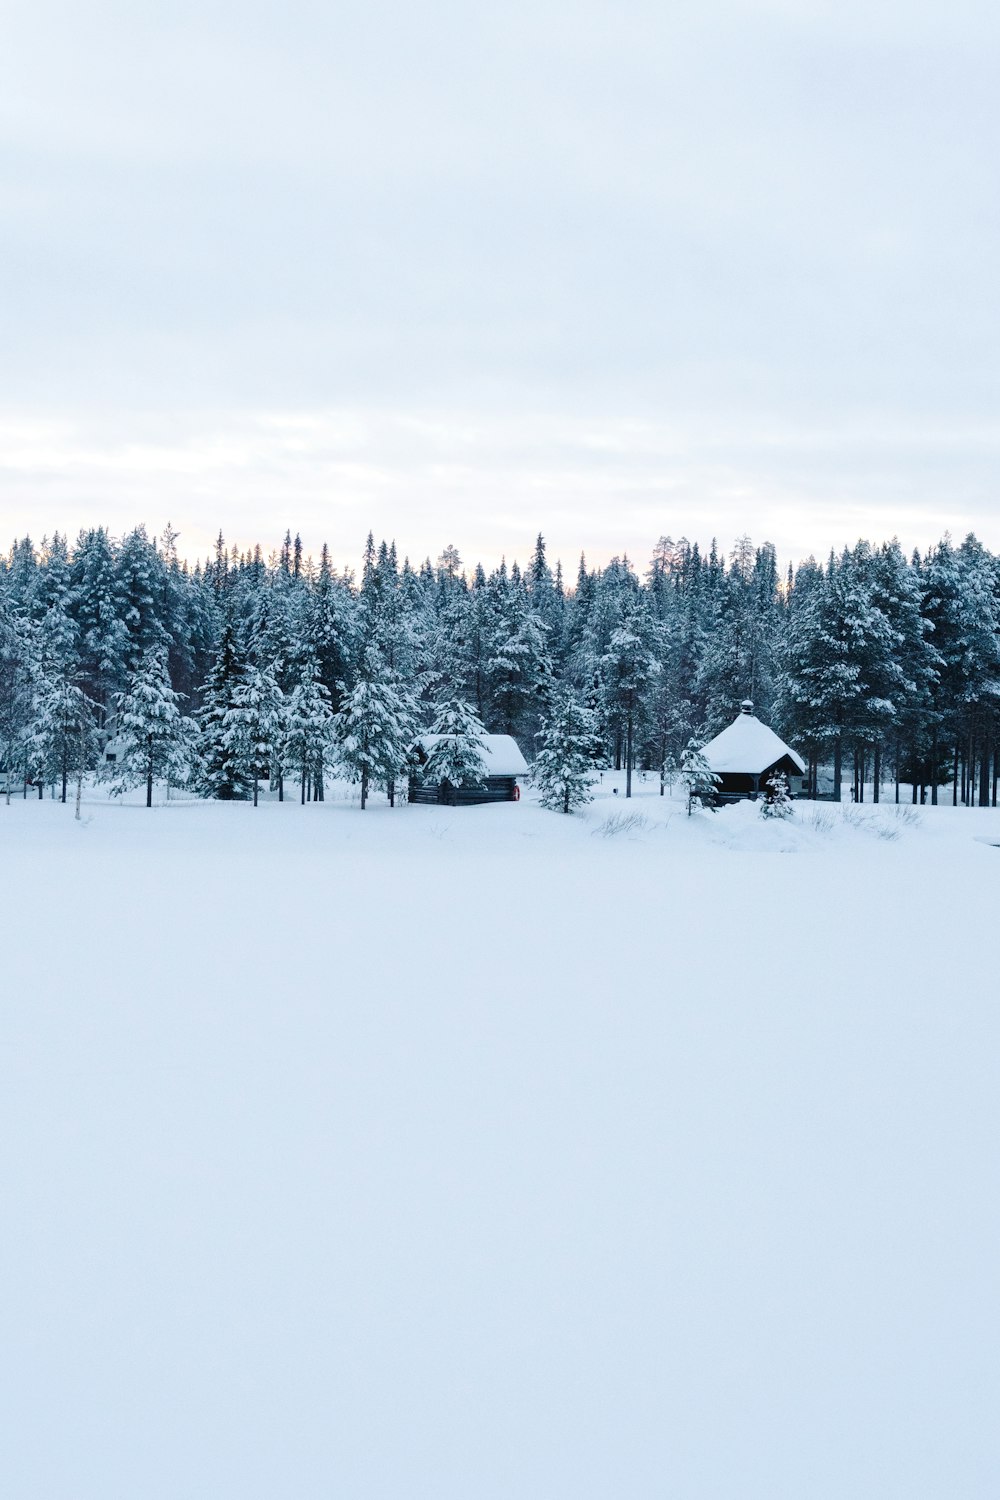 Maisons et pins sur le champ de neige pendant la journée